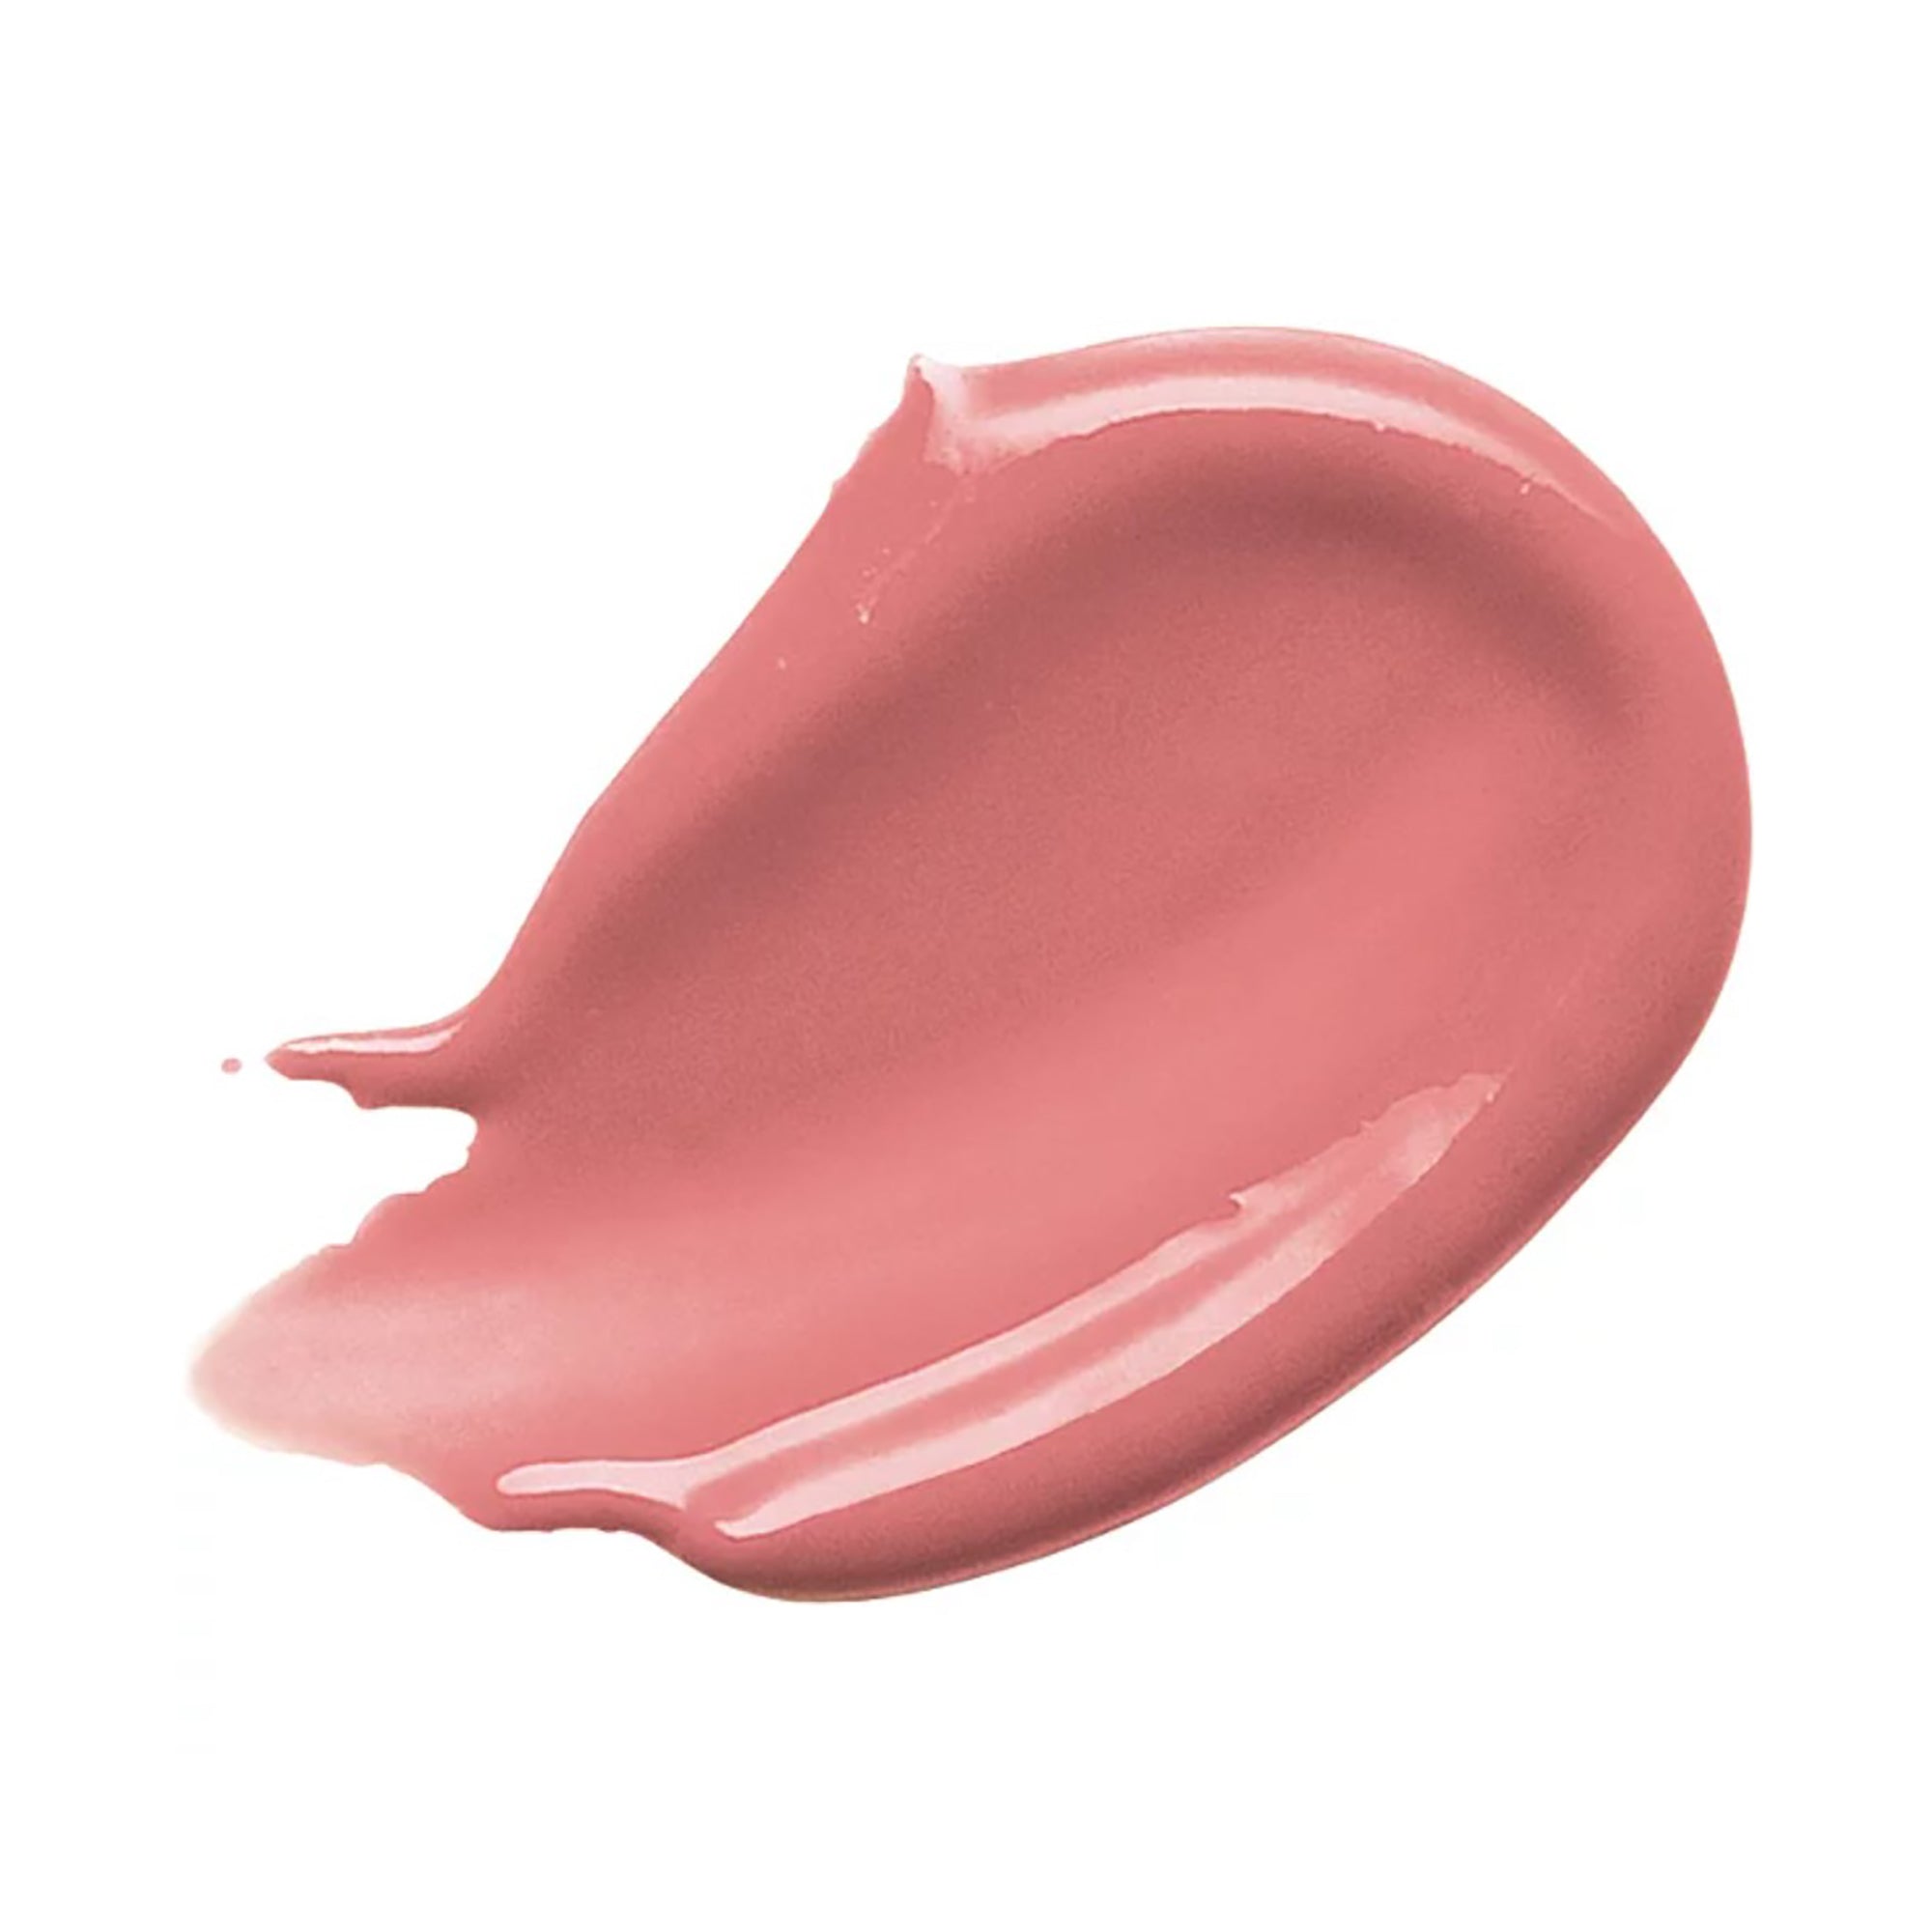 Buxom Full-on Plumping Lip Cream Gloss / MUDSLIDE